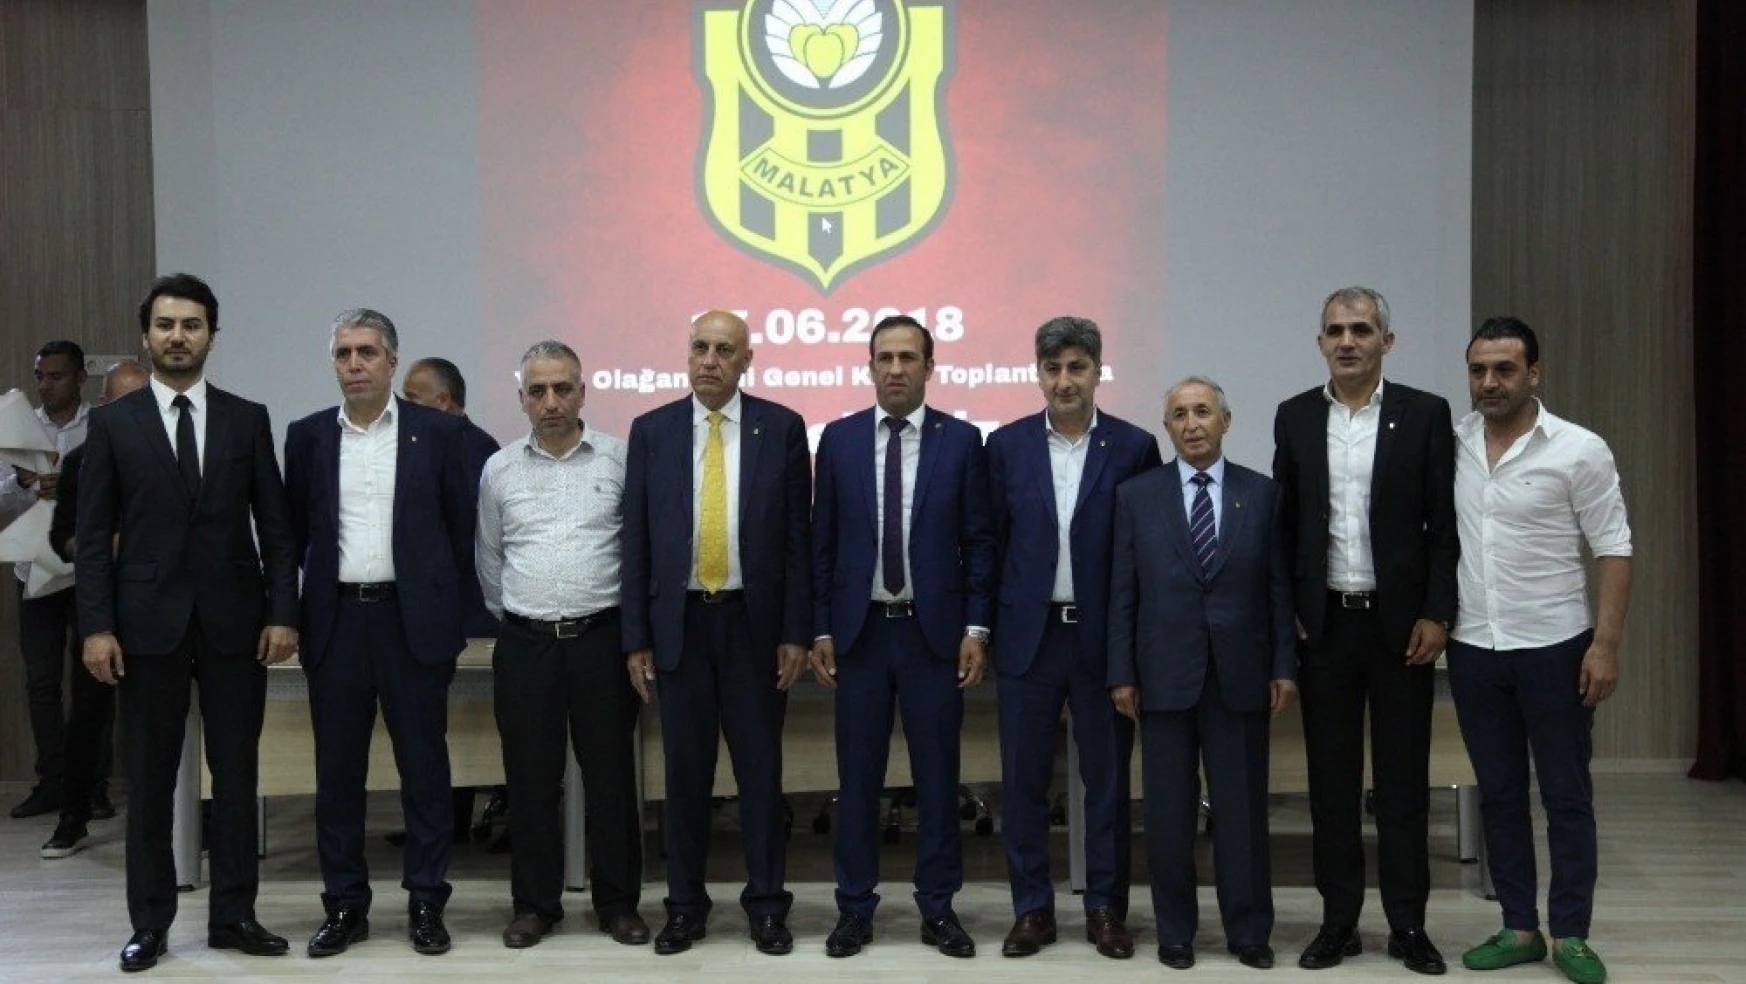 Yeni Malatyaspor'da yönetim mali açıdan ibra edildi